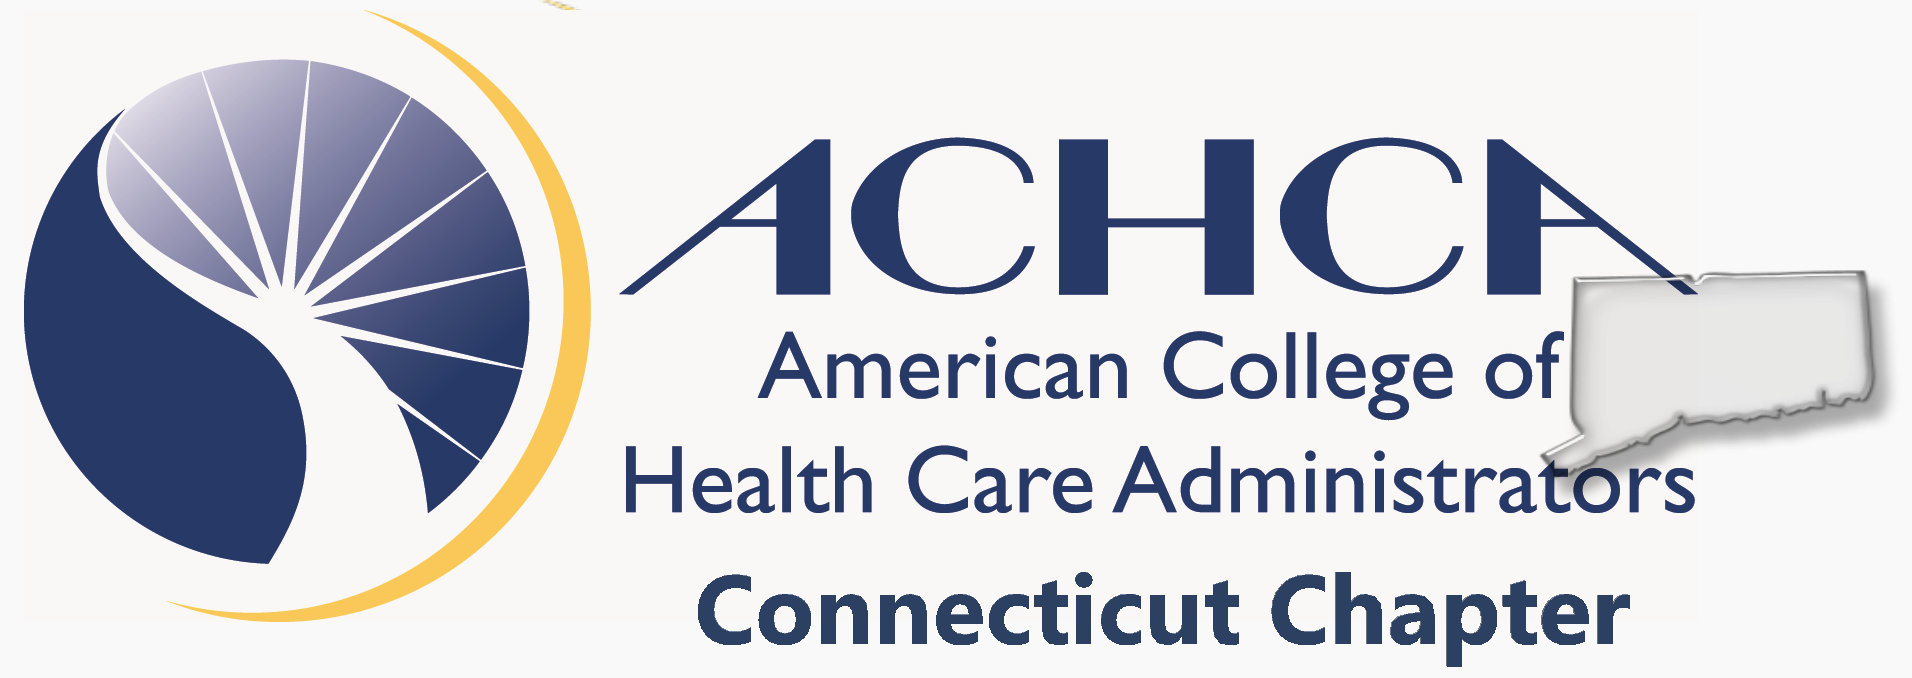 ACHCA Connecticut